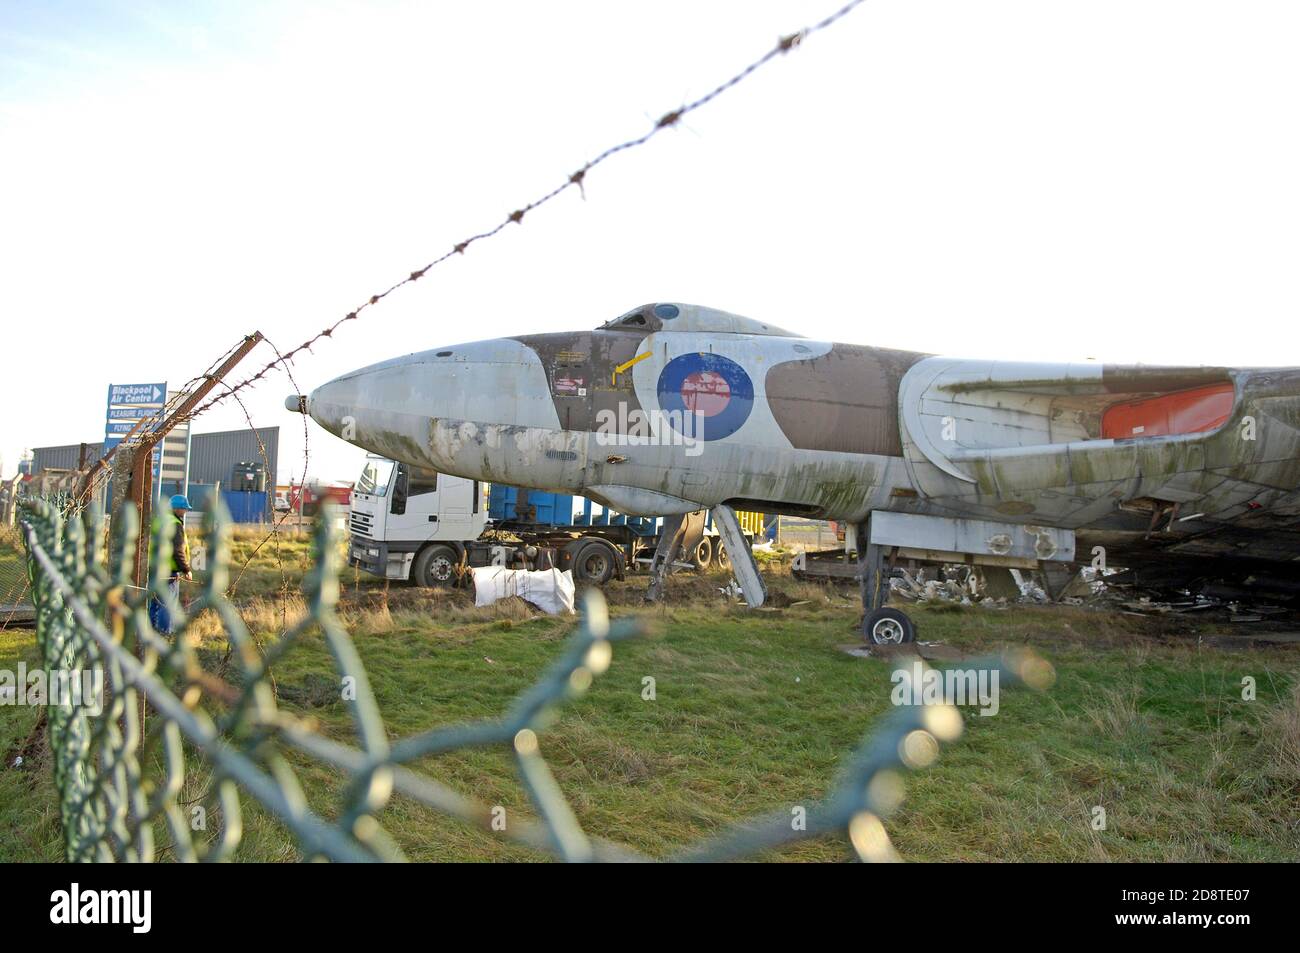 Dopo aver sostato all'ingresso dell'aeroporto di Blackpool per 23 anni, il bombardiere Vulcan è stato smantellato e inviato per il riciclaggio nel gennaio del 2006. Foto Stock